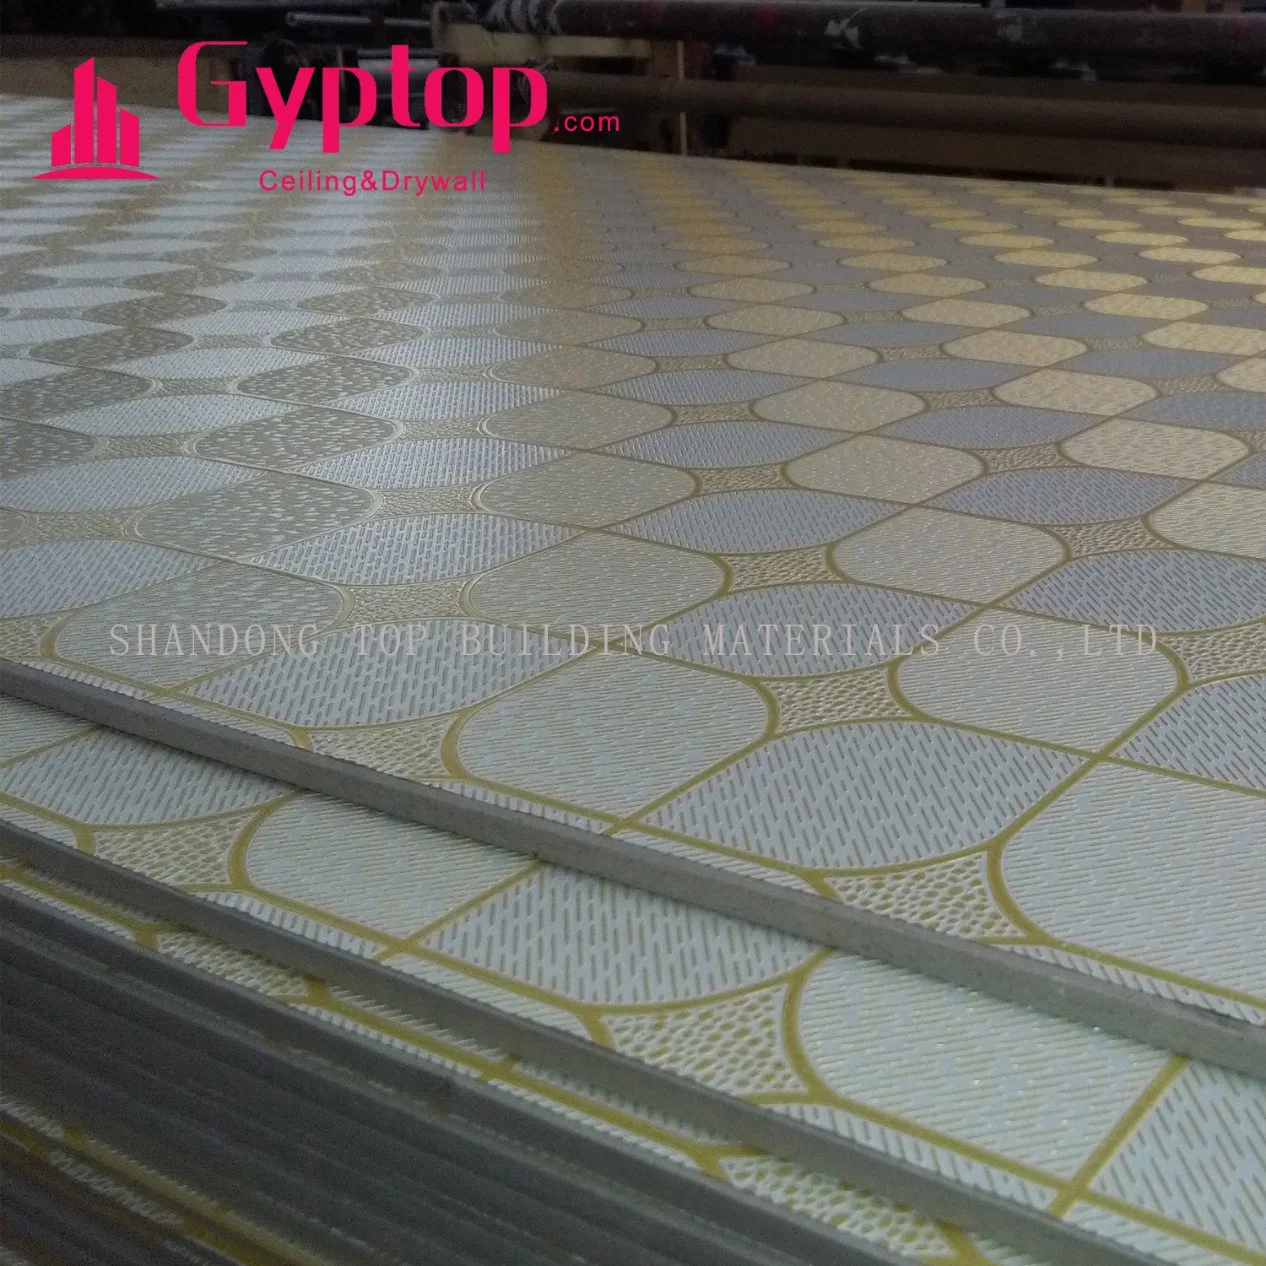 PVC Facing Gypsum Ceiling with Aluminum/ 2 X2 Vinyl Gypsum Ceiling Tiles